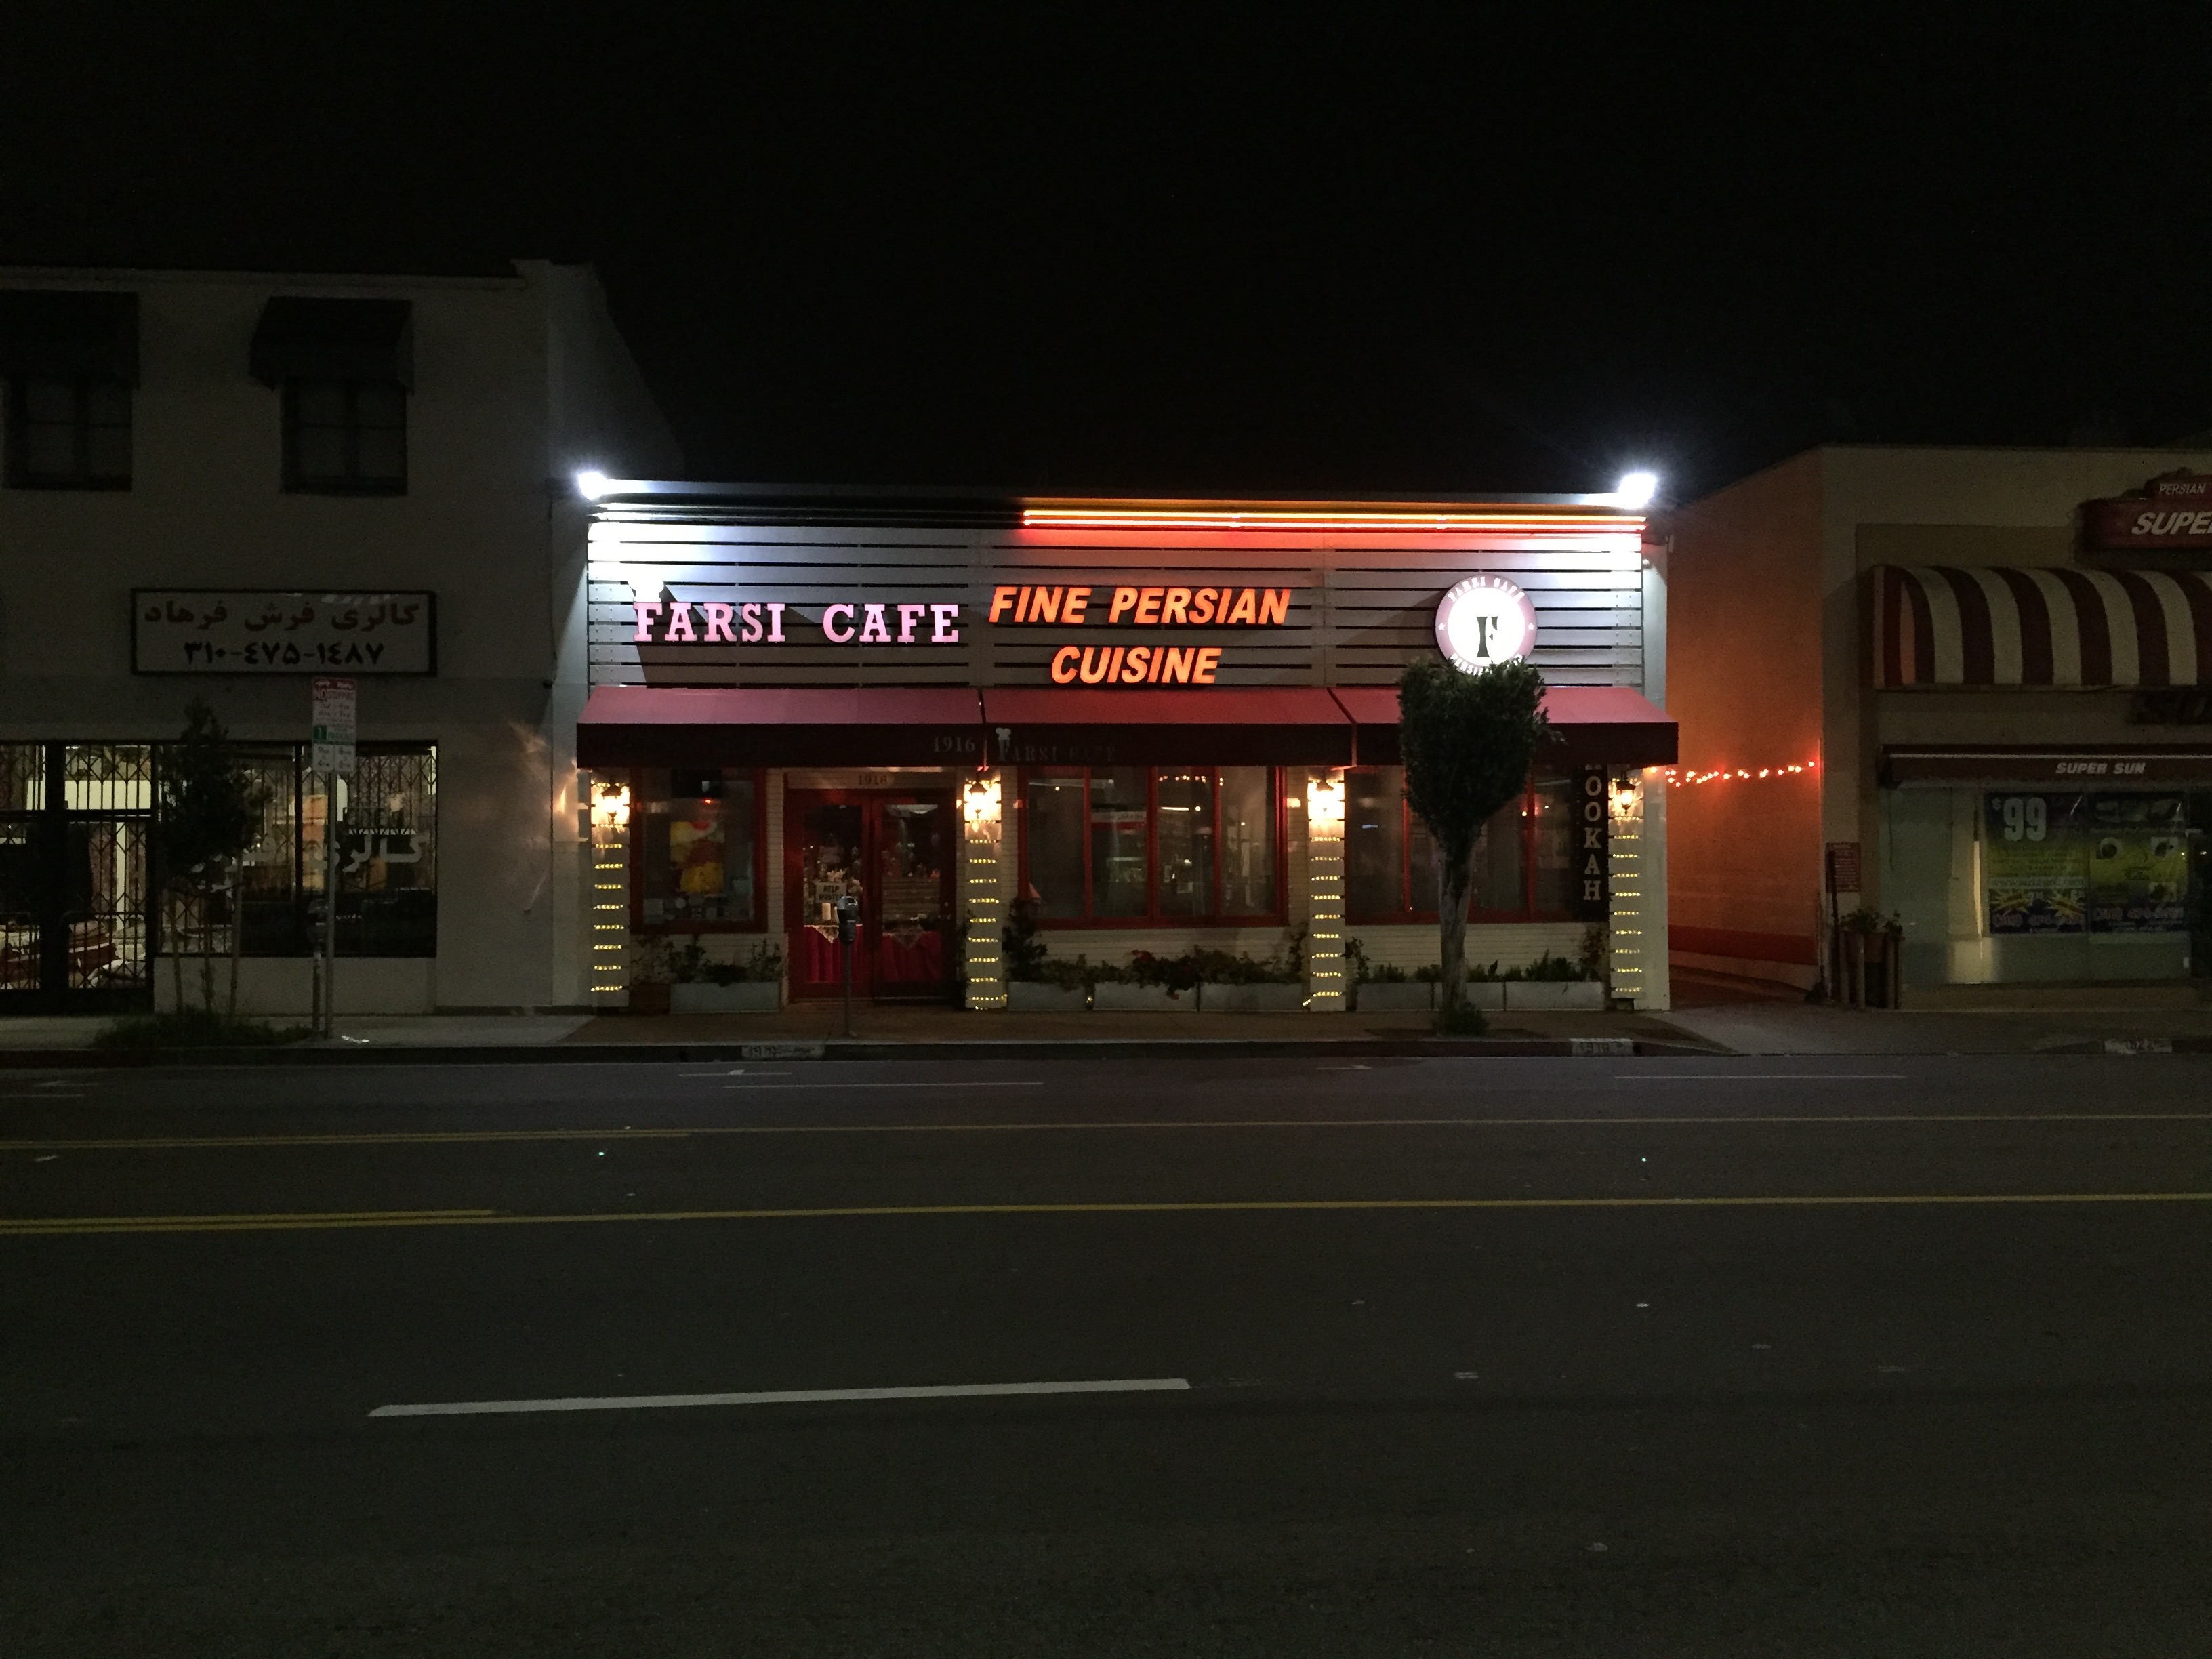 Farsi Cafe on Westwood Boulevard